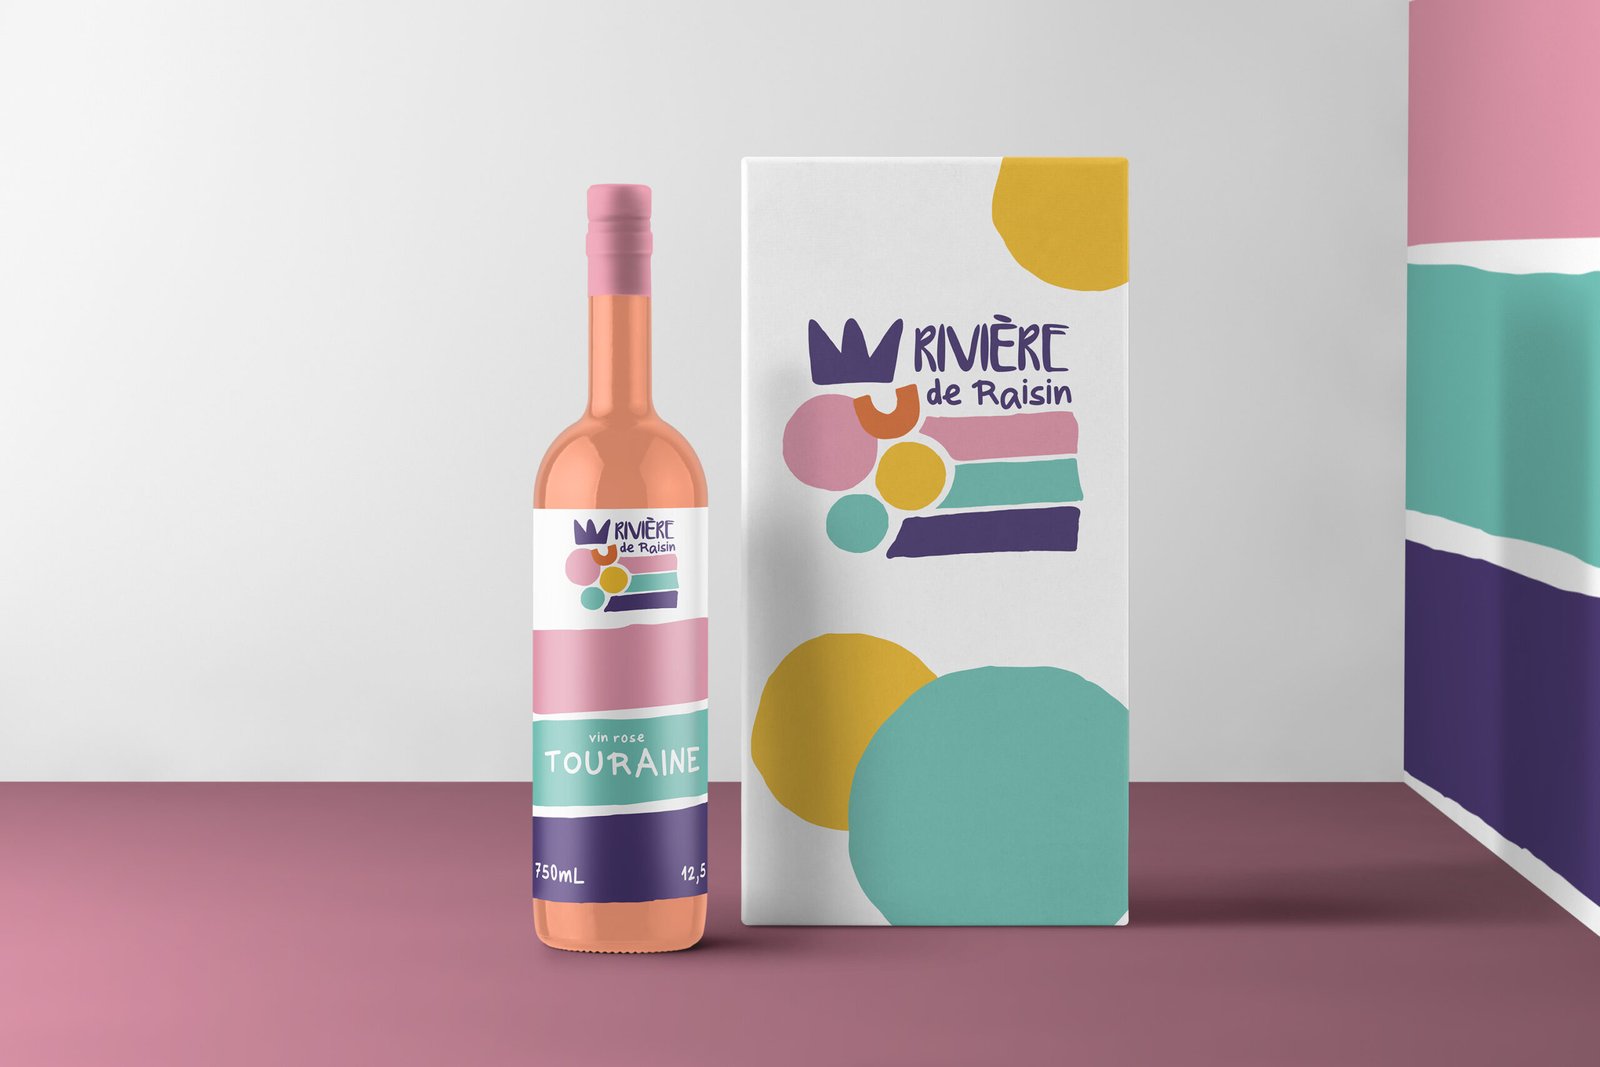 agence de communication Tours vigneron logo étiquettes packaging vin rosé